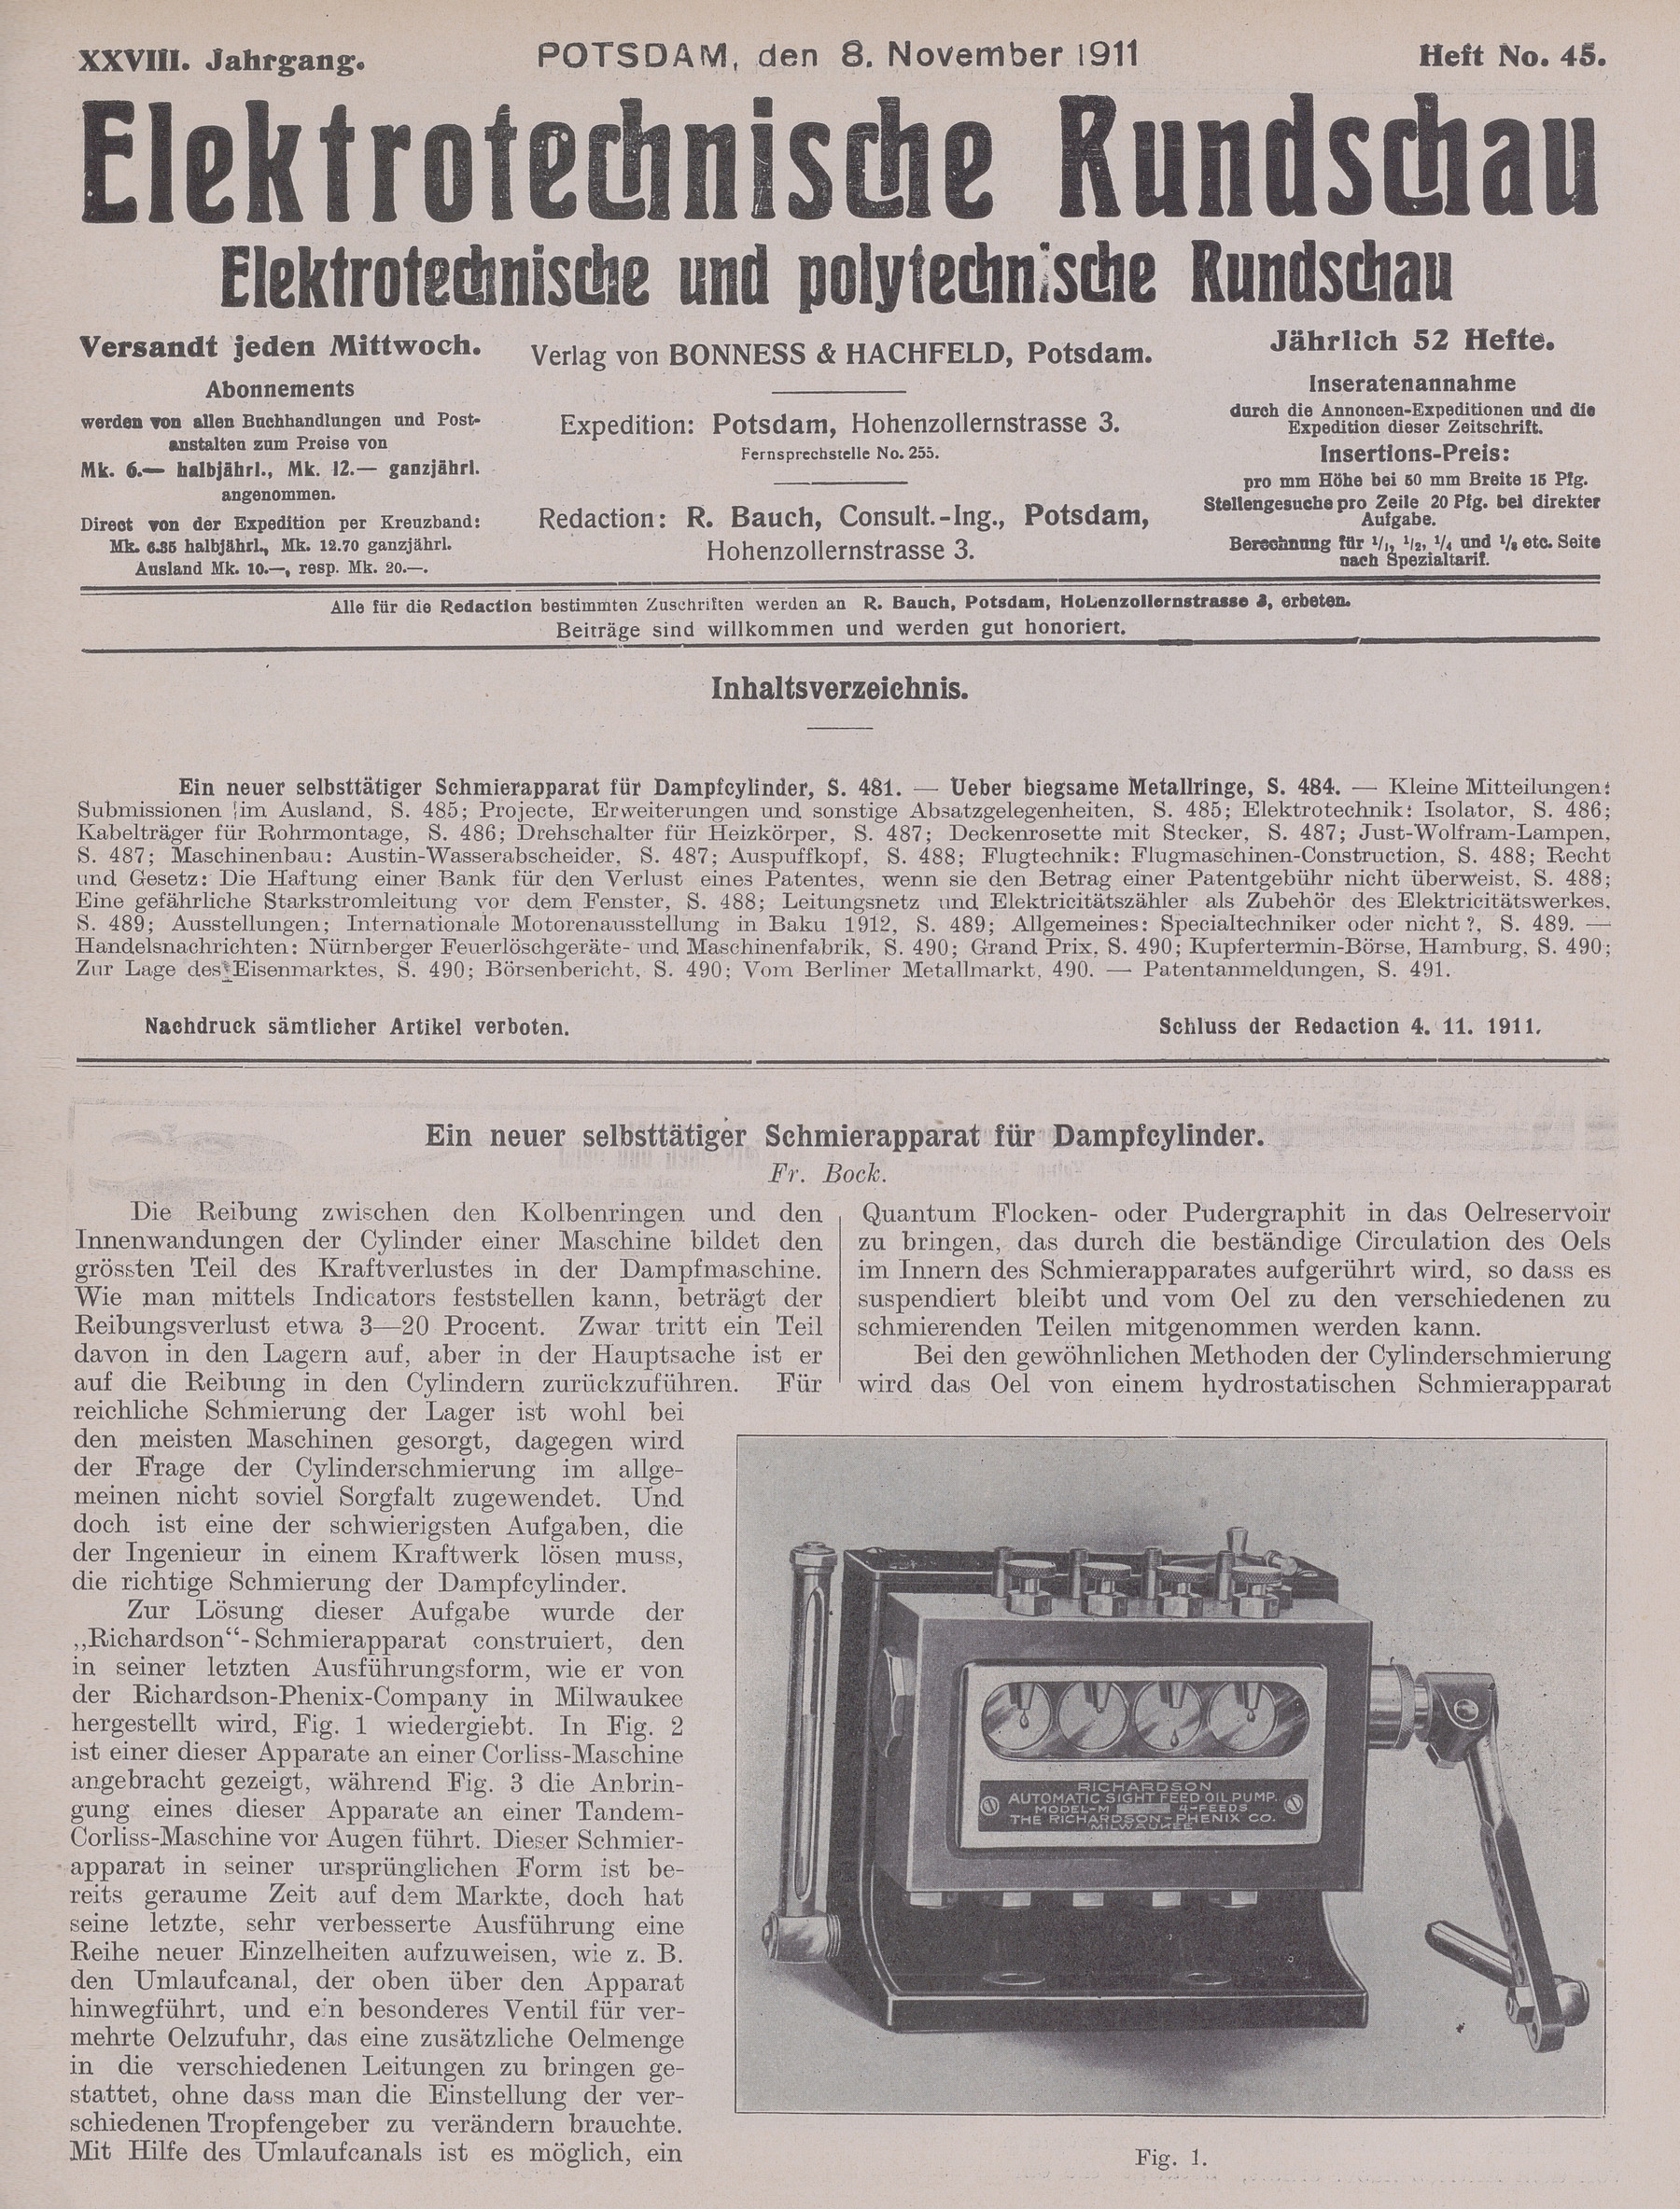 Elektrotechnische Rundschau : Elektrotechnische und polytechnische Rundschau, XXVIII. Jahrgang, Heft No. 45